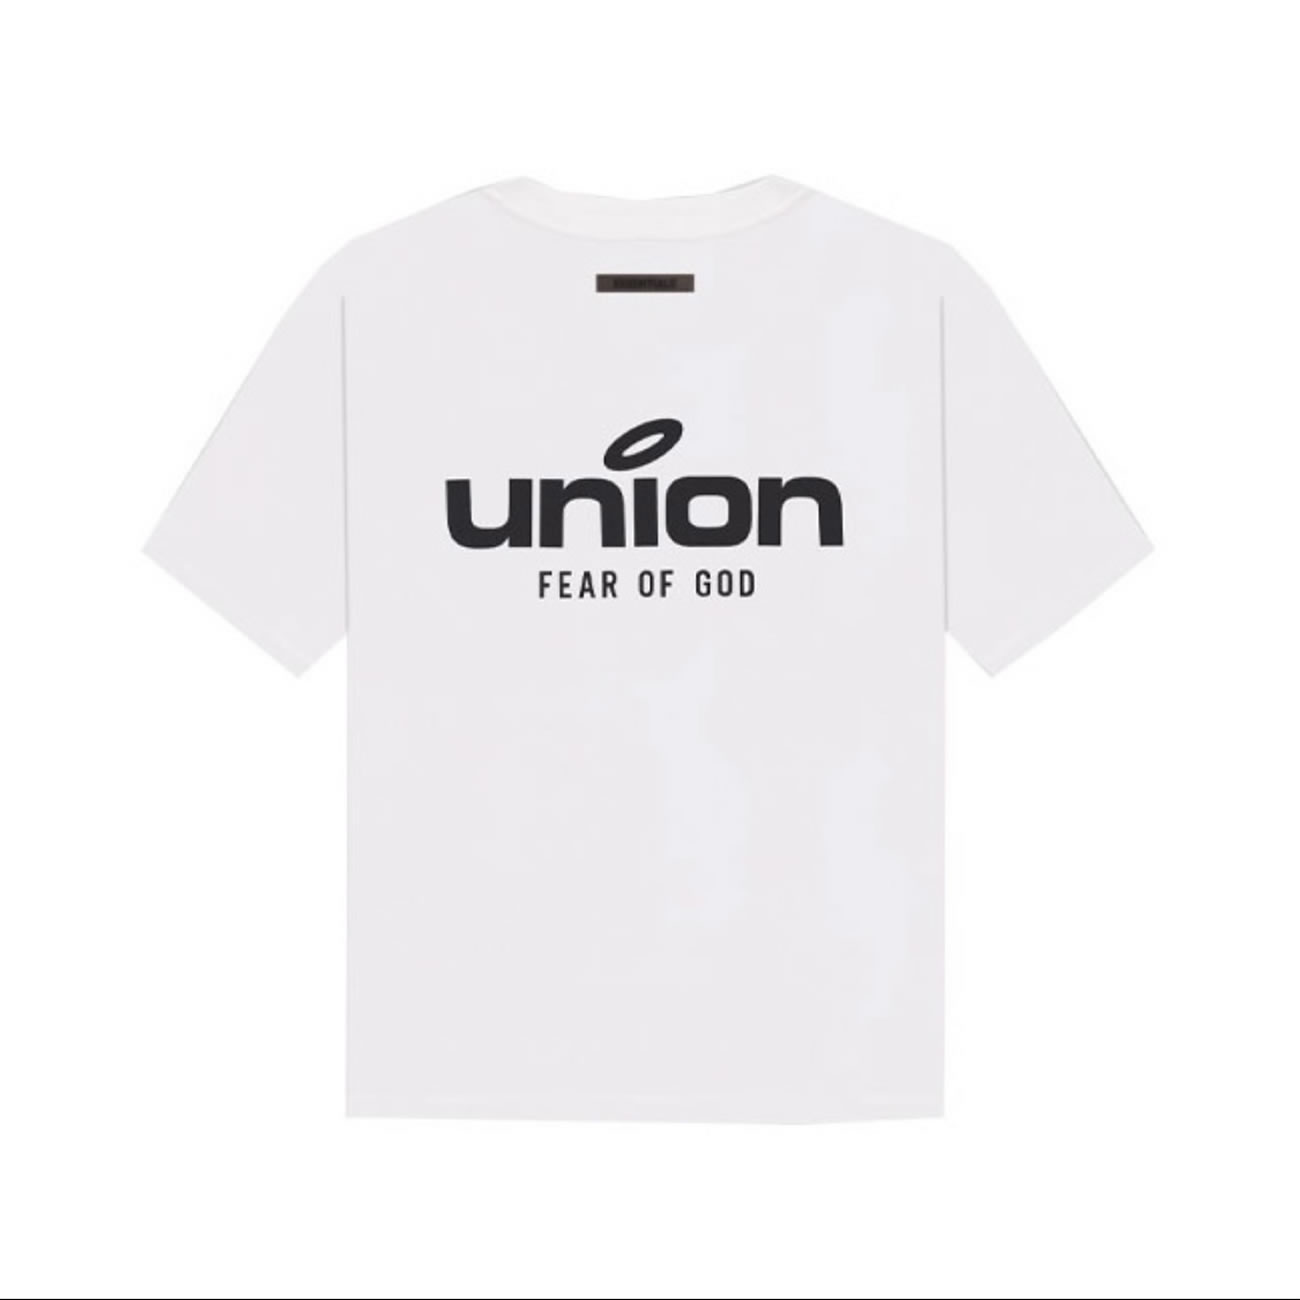 Fear of God x Union 30 Year Vintage Tee tshirt